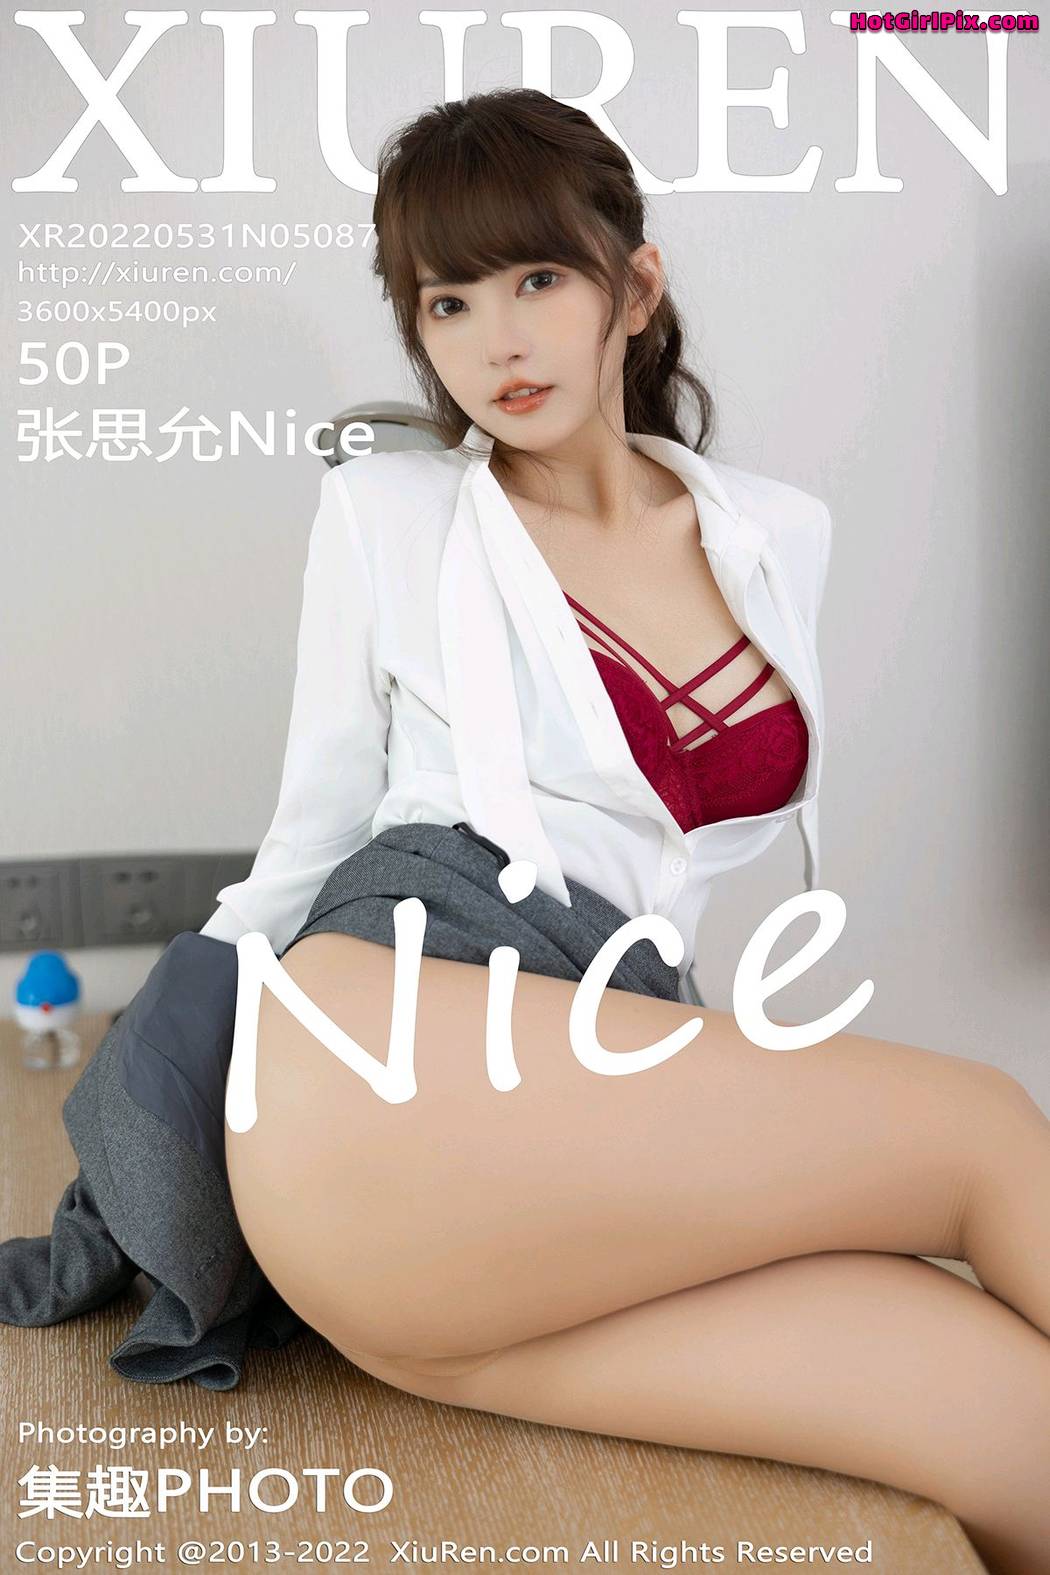 [XIUREN] No.5087 Zhang Si Yun 张思允Nice Cover Photo